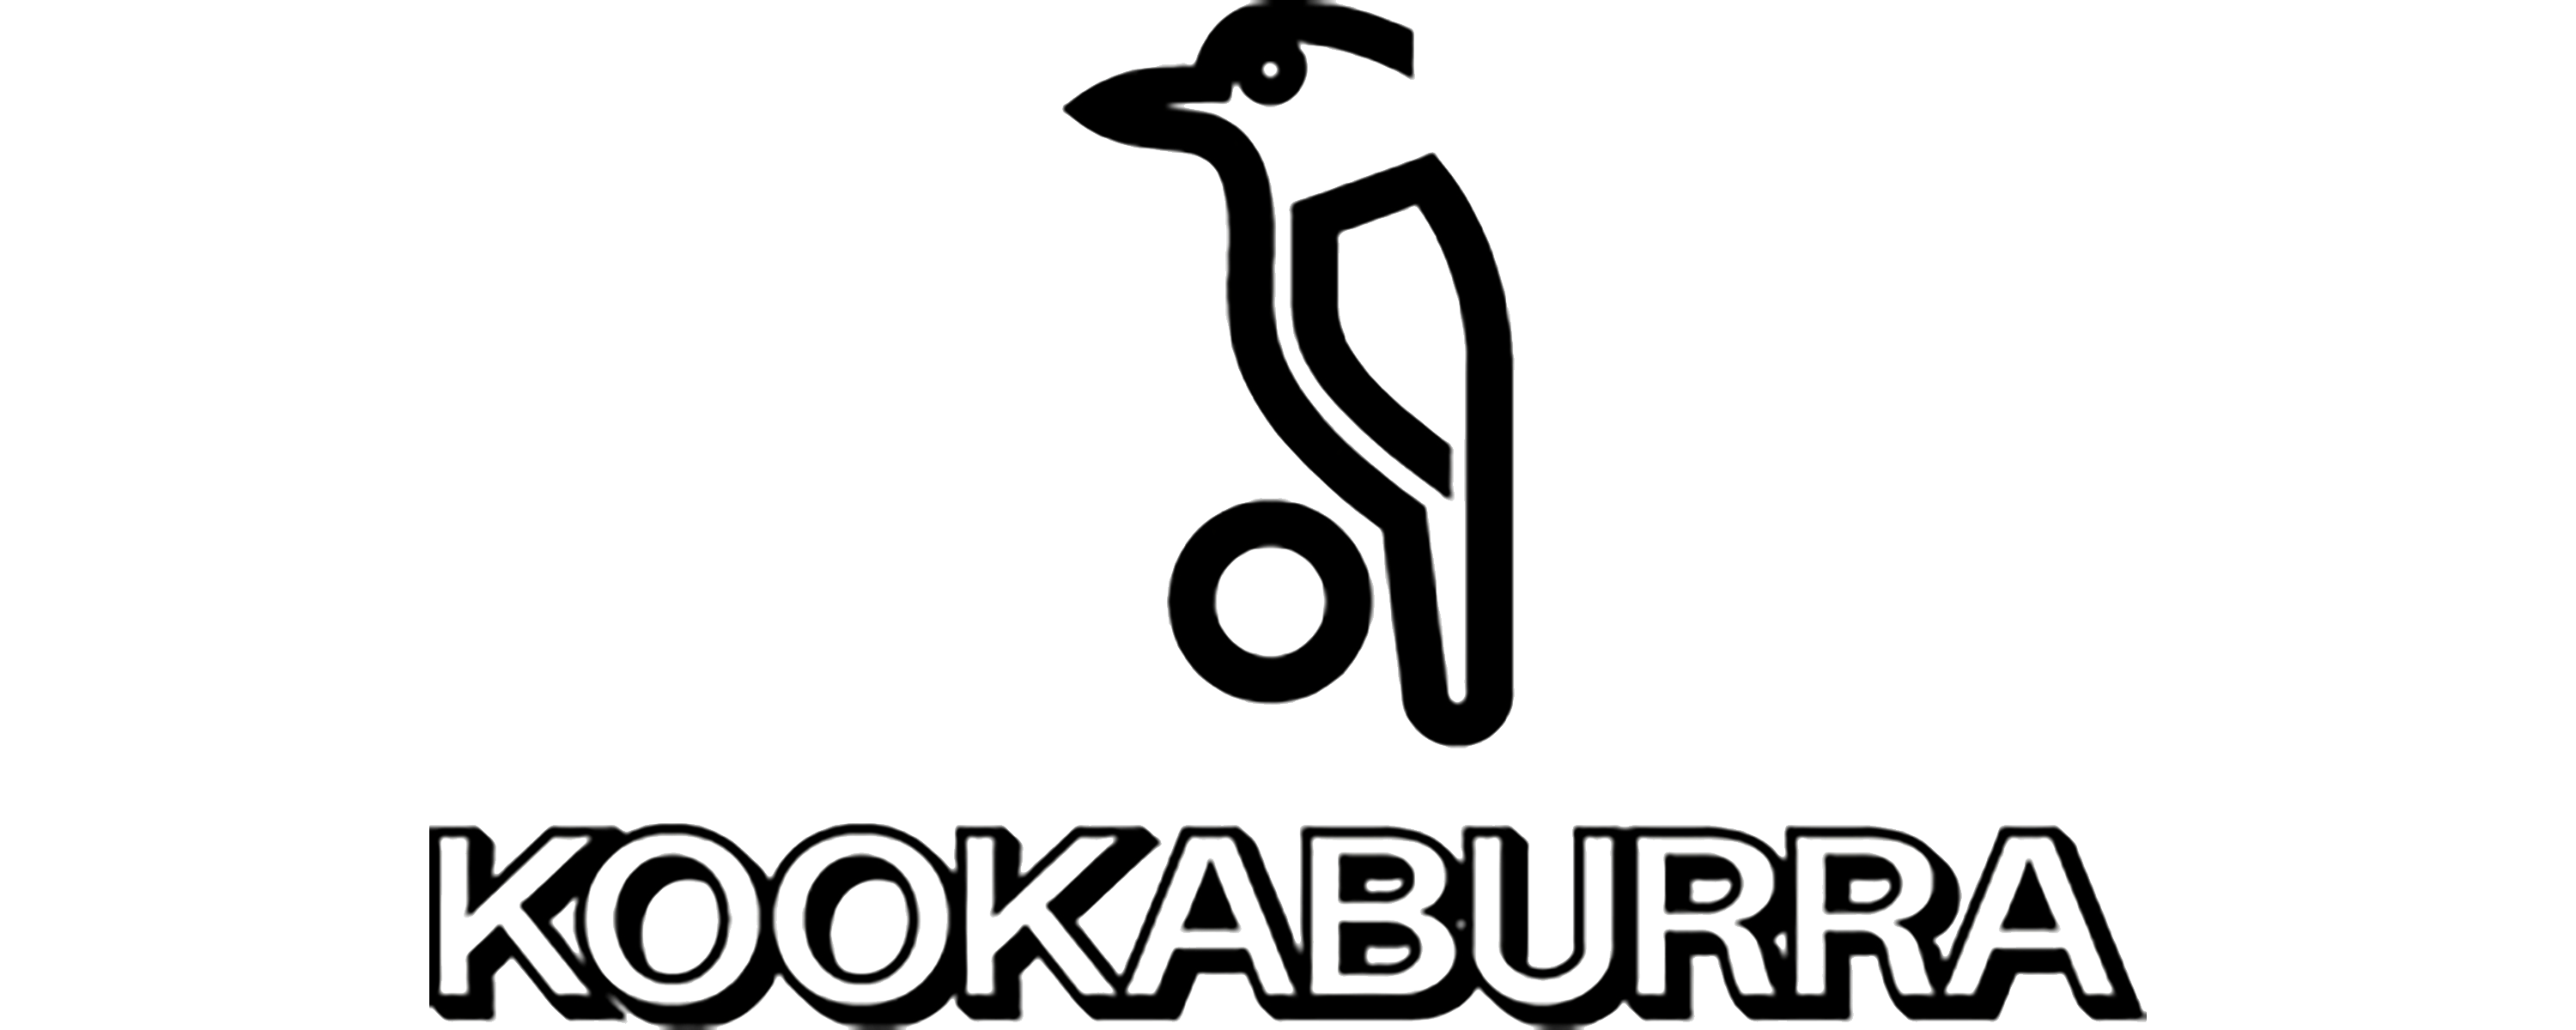 Kookaburra logo